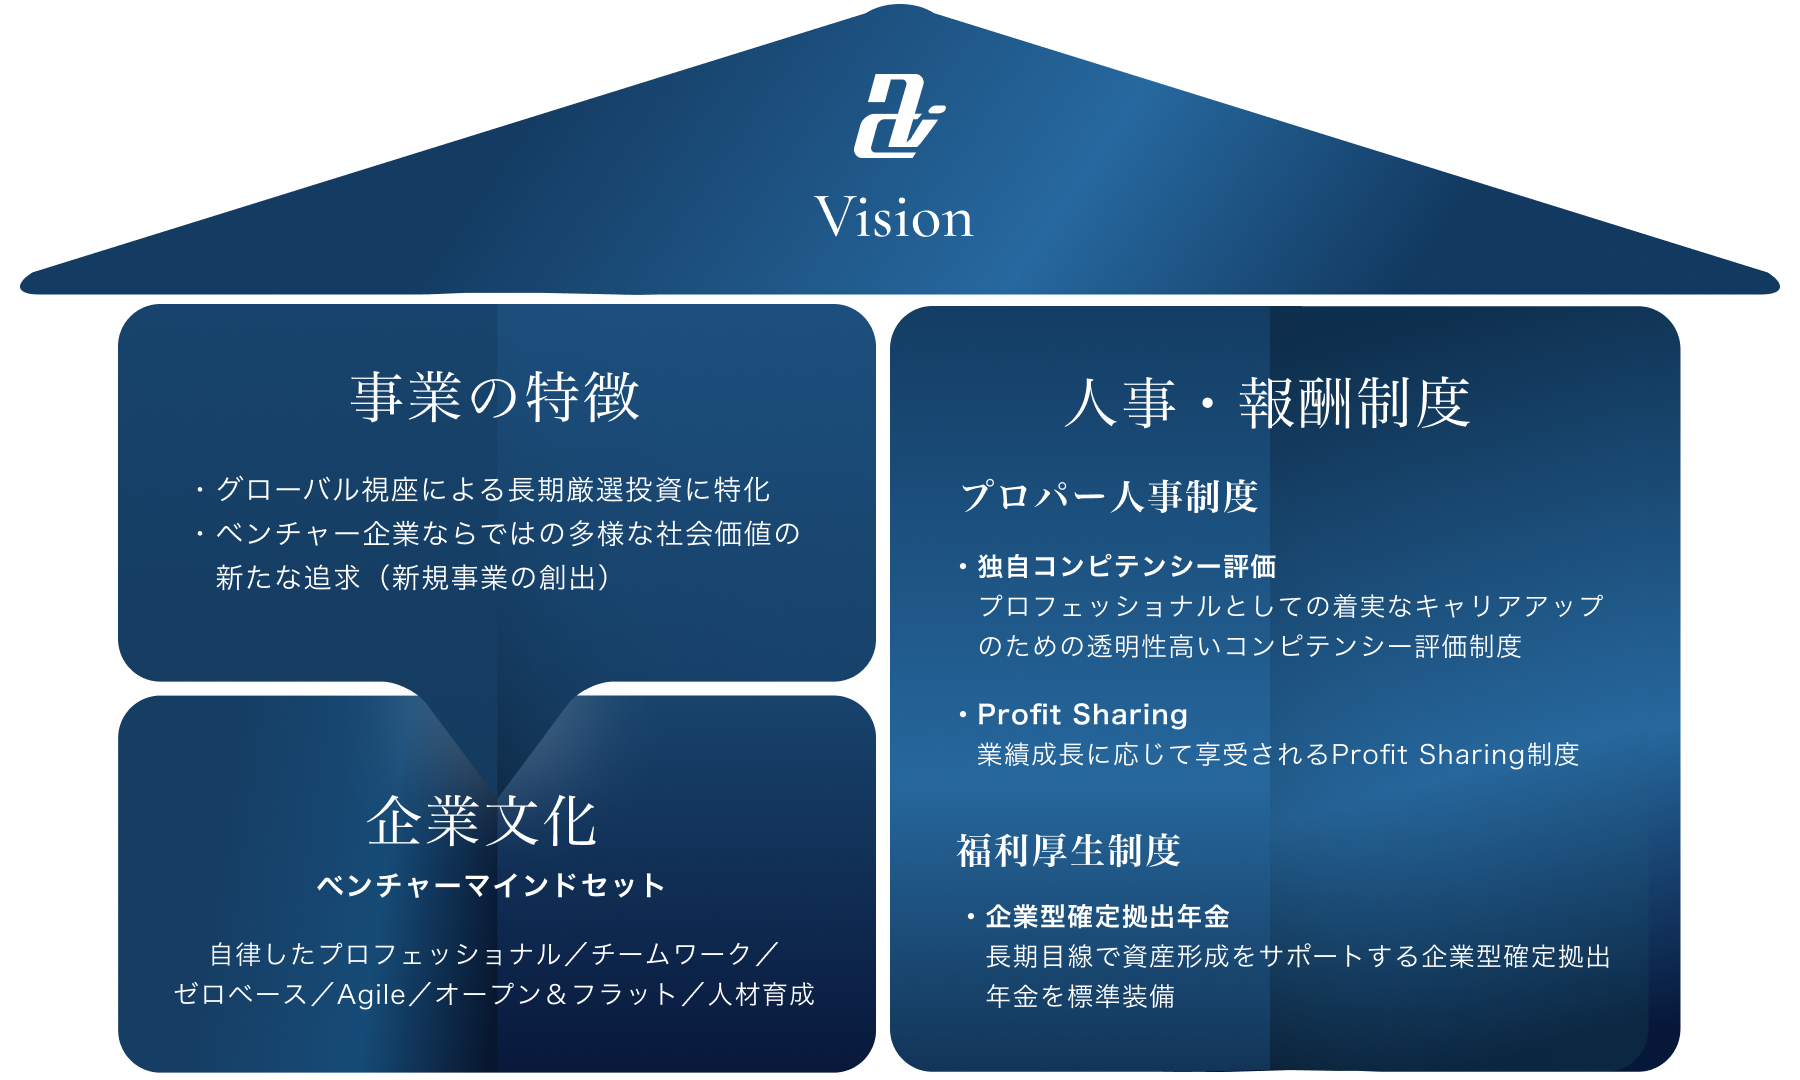 「事業の特徴」と「企業文化」、「人事・報酬制度」の３つの関係を表した図です。